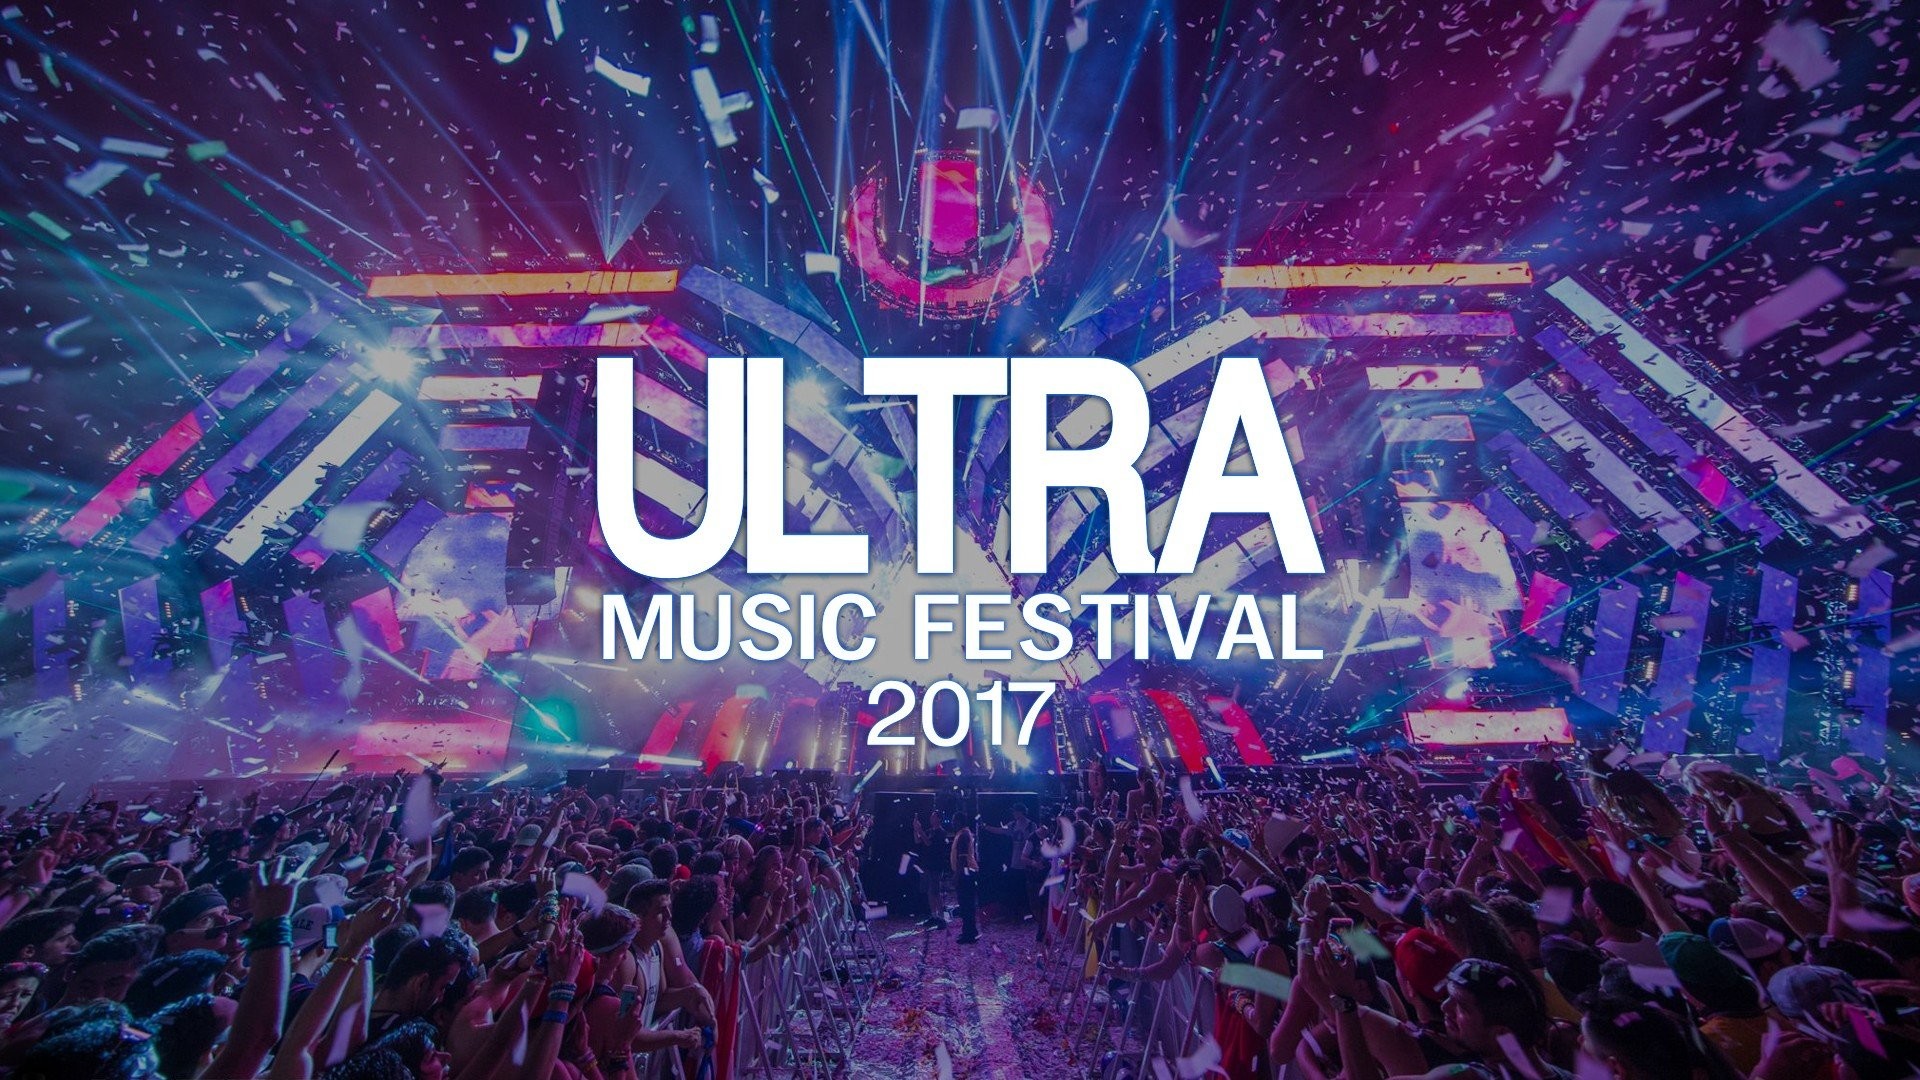 1920x1080  ultra music festival umf logo wallpaper and background JPG 501 kB